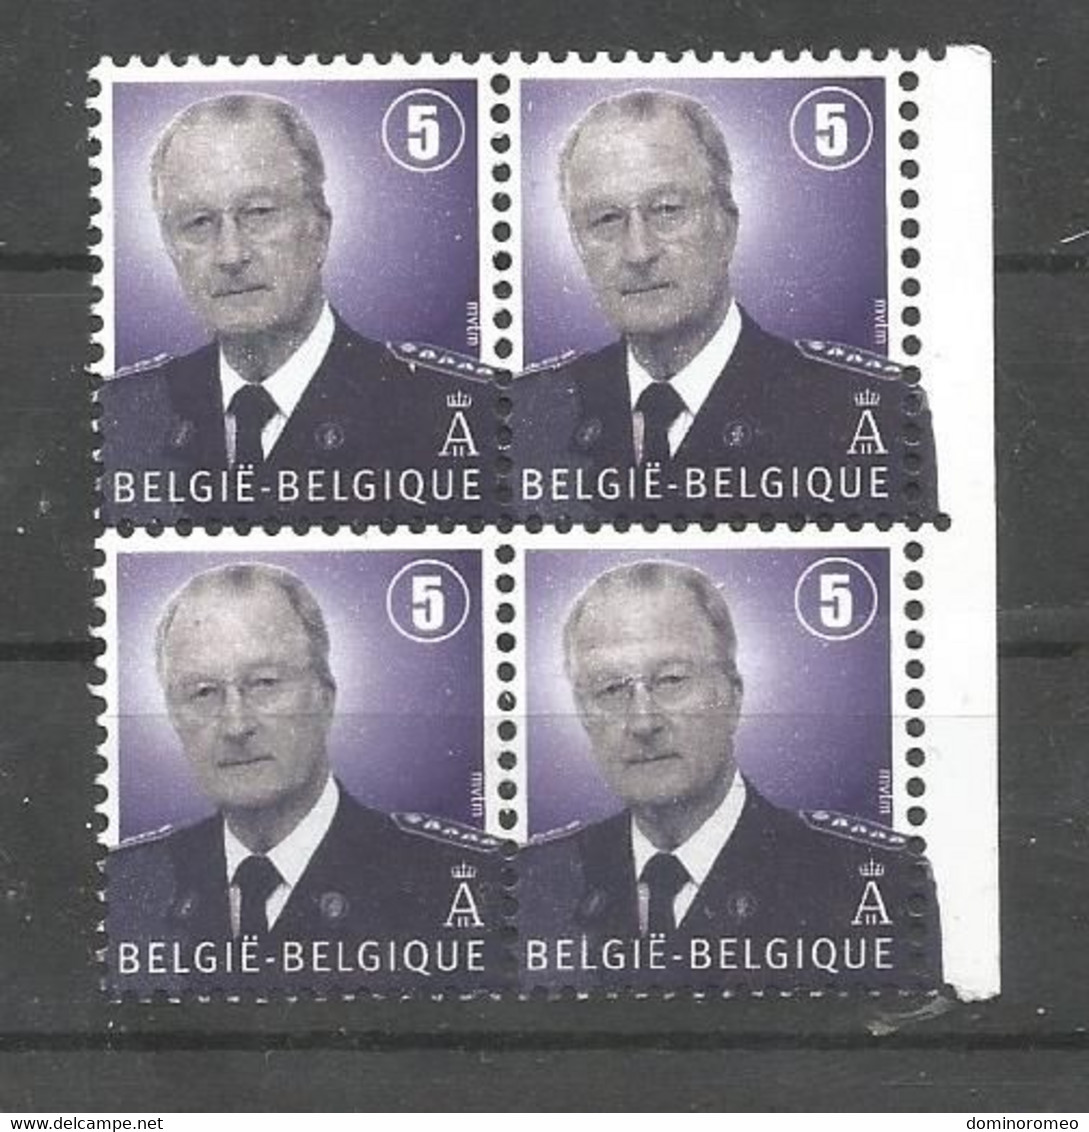 OCB 3698 ** Postfris Zonder Scharnier In Blok Van 4 - 1993-2013 König Albert II (MVTM)